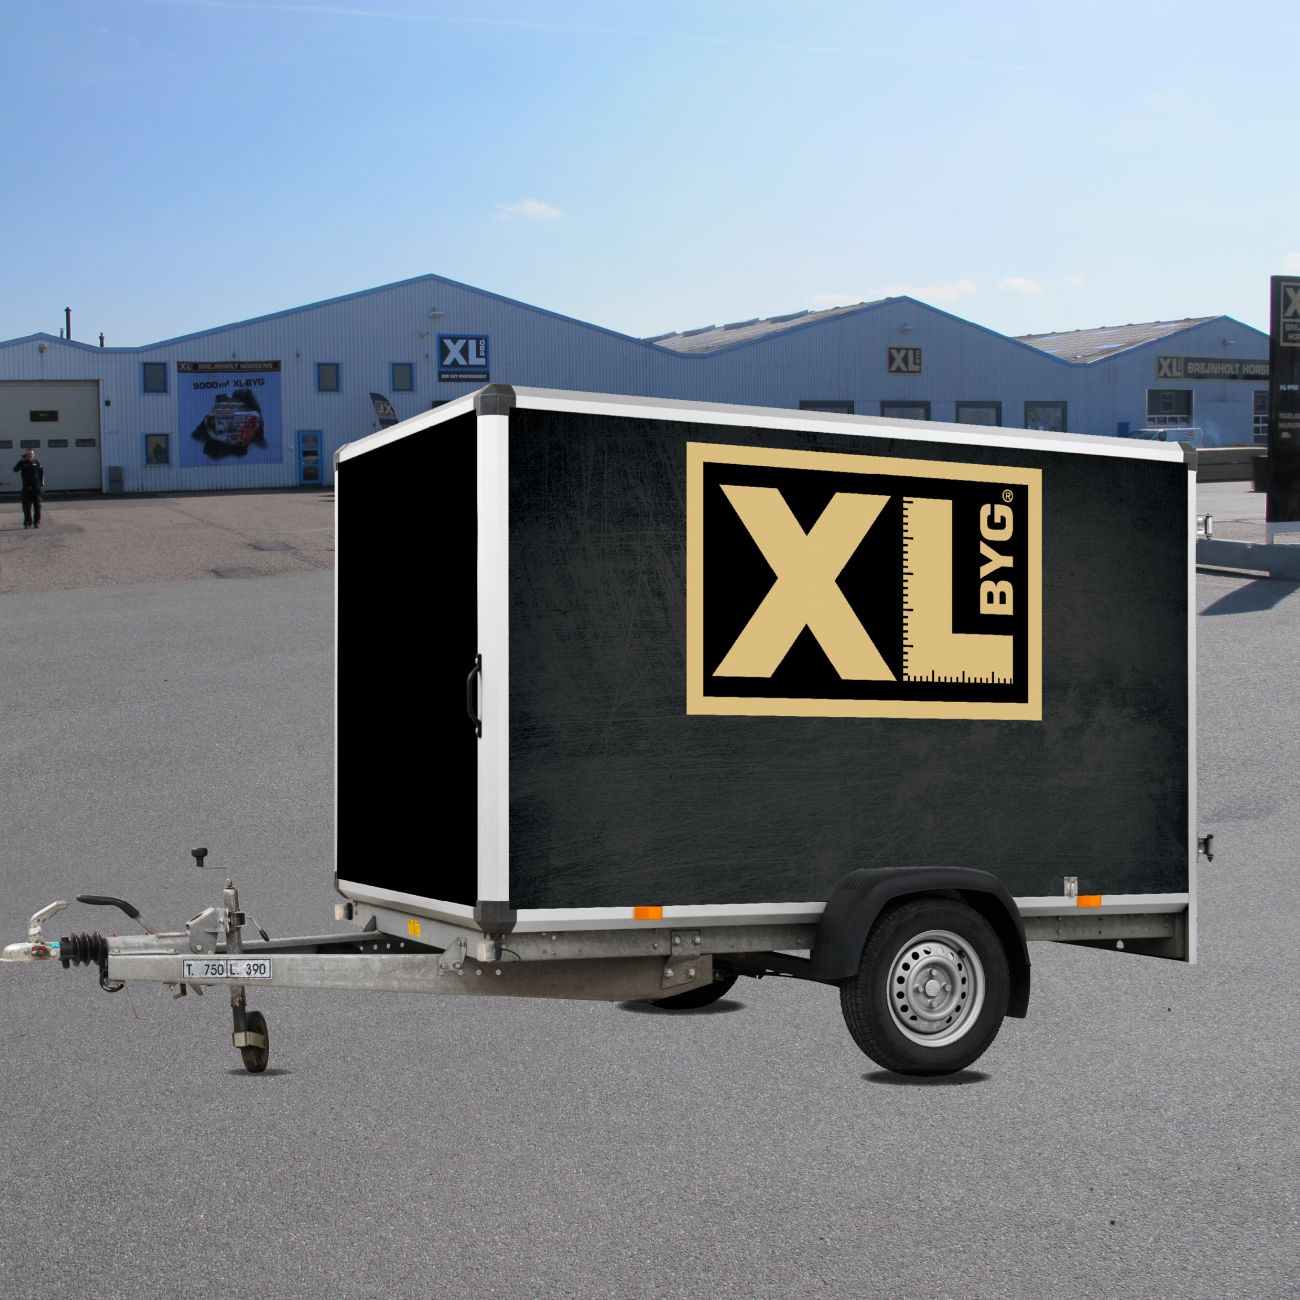 Villain sandsynlighed klodset Lej en trailer gratis hos XL-BYG ⇒ Se hvordan og find booking her